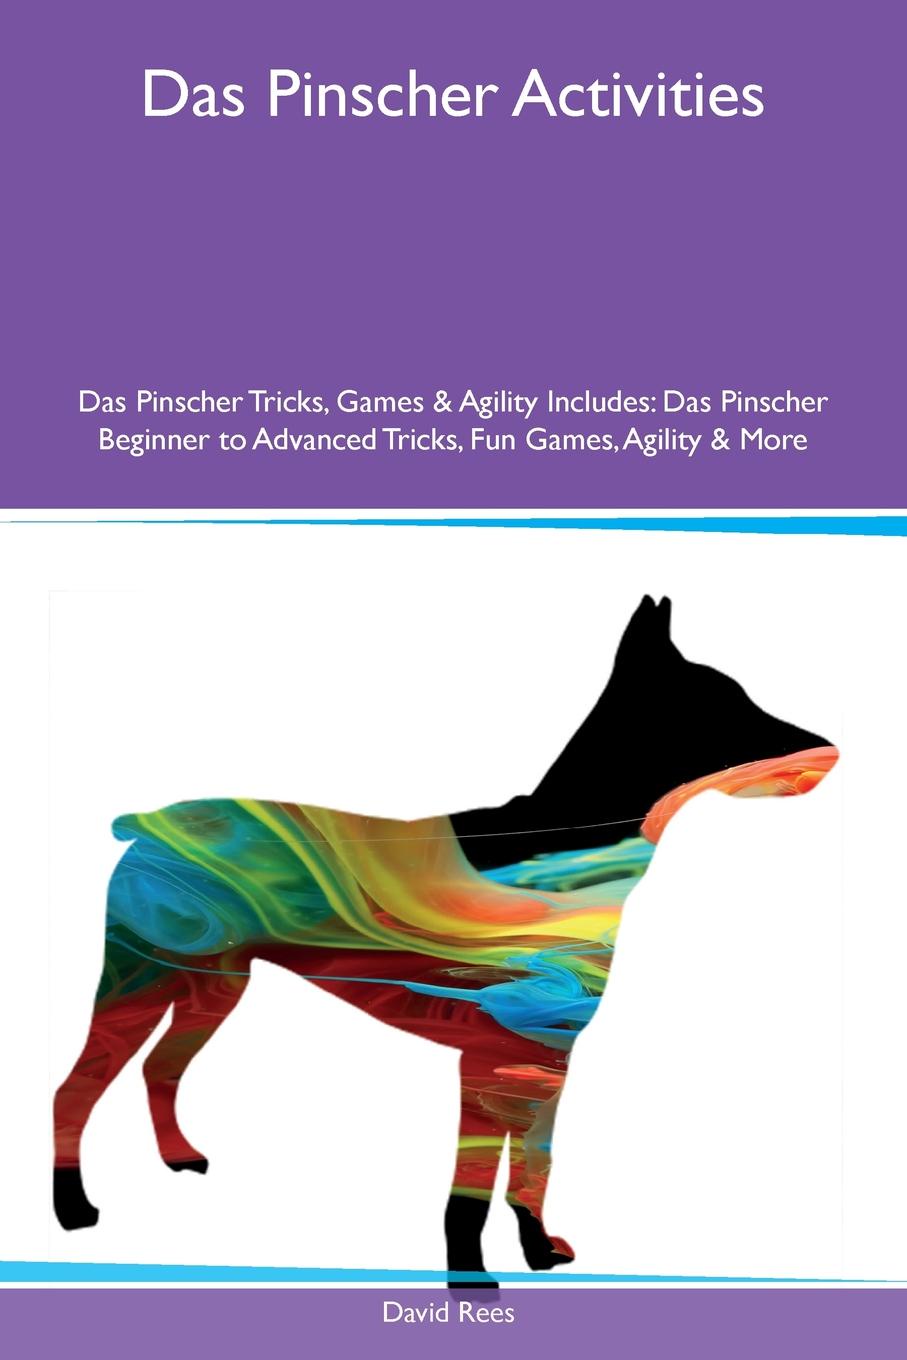 Das Pinscher Activities Das Pinscher Tricks, Games & Agility Includes. Das Pinscher Beginner to Advanced Tricks, Fun Games, Agility & More